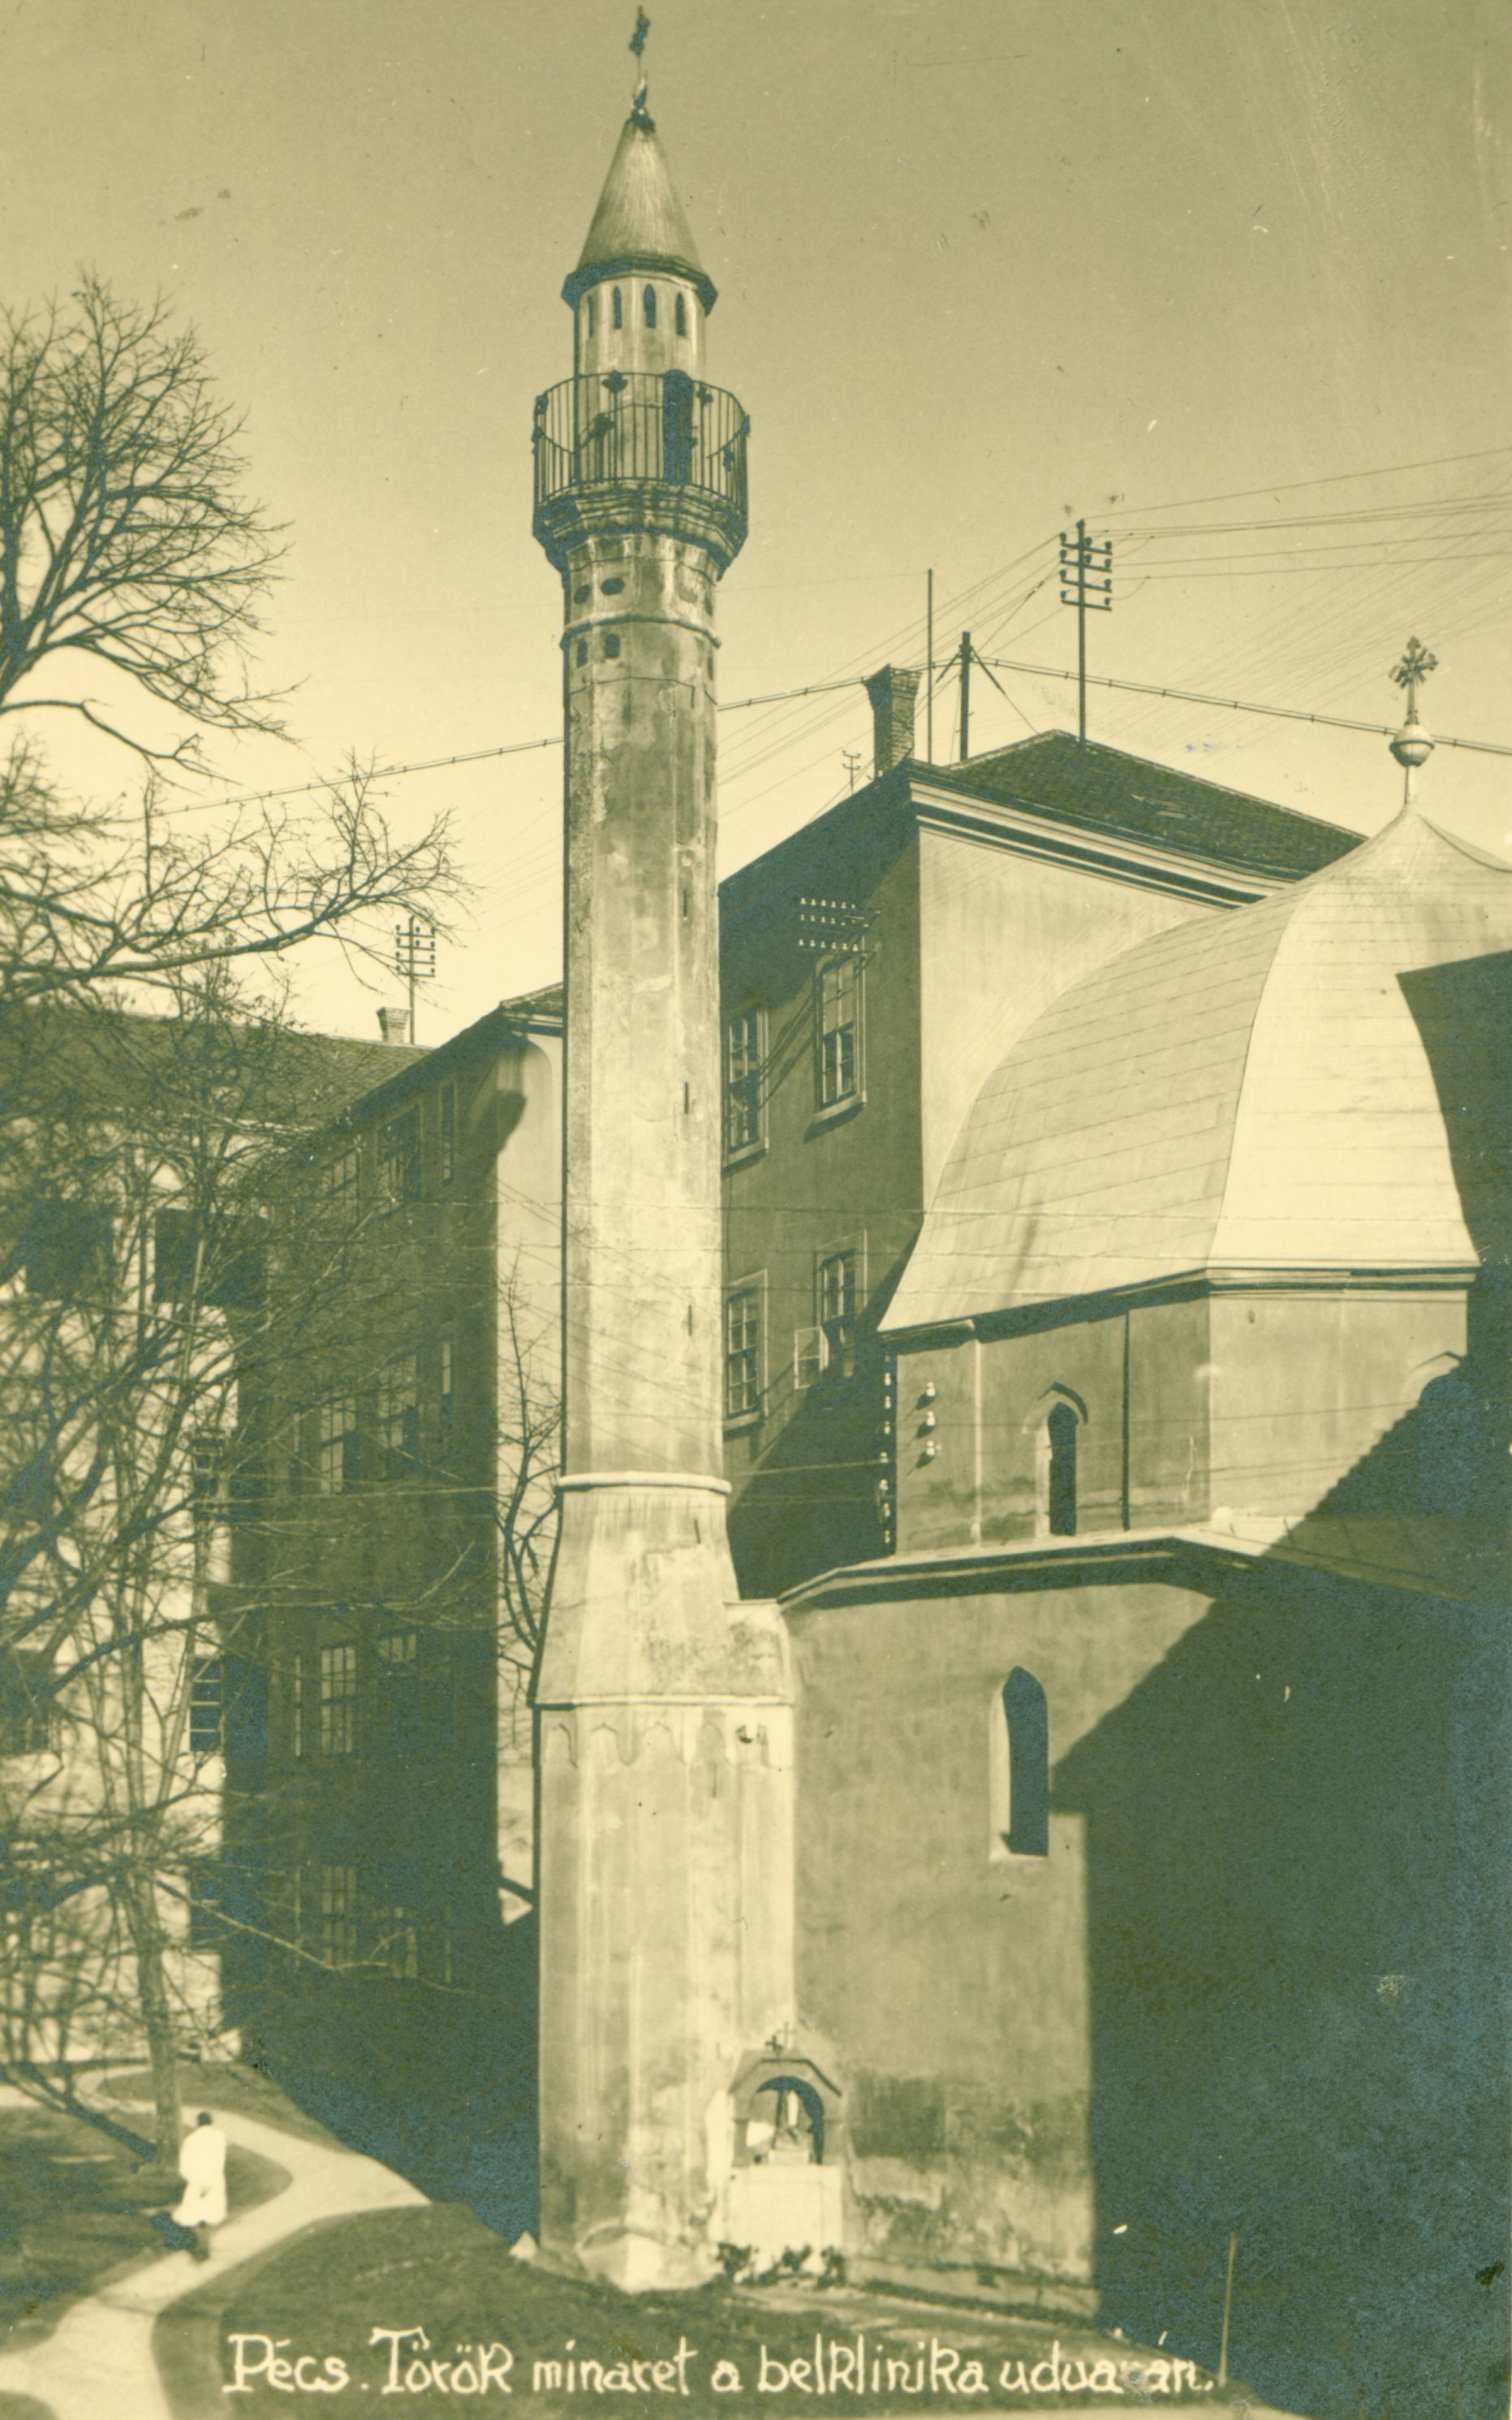 Pécs A török minaret a belklinika udvarán